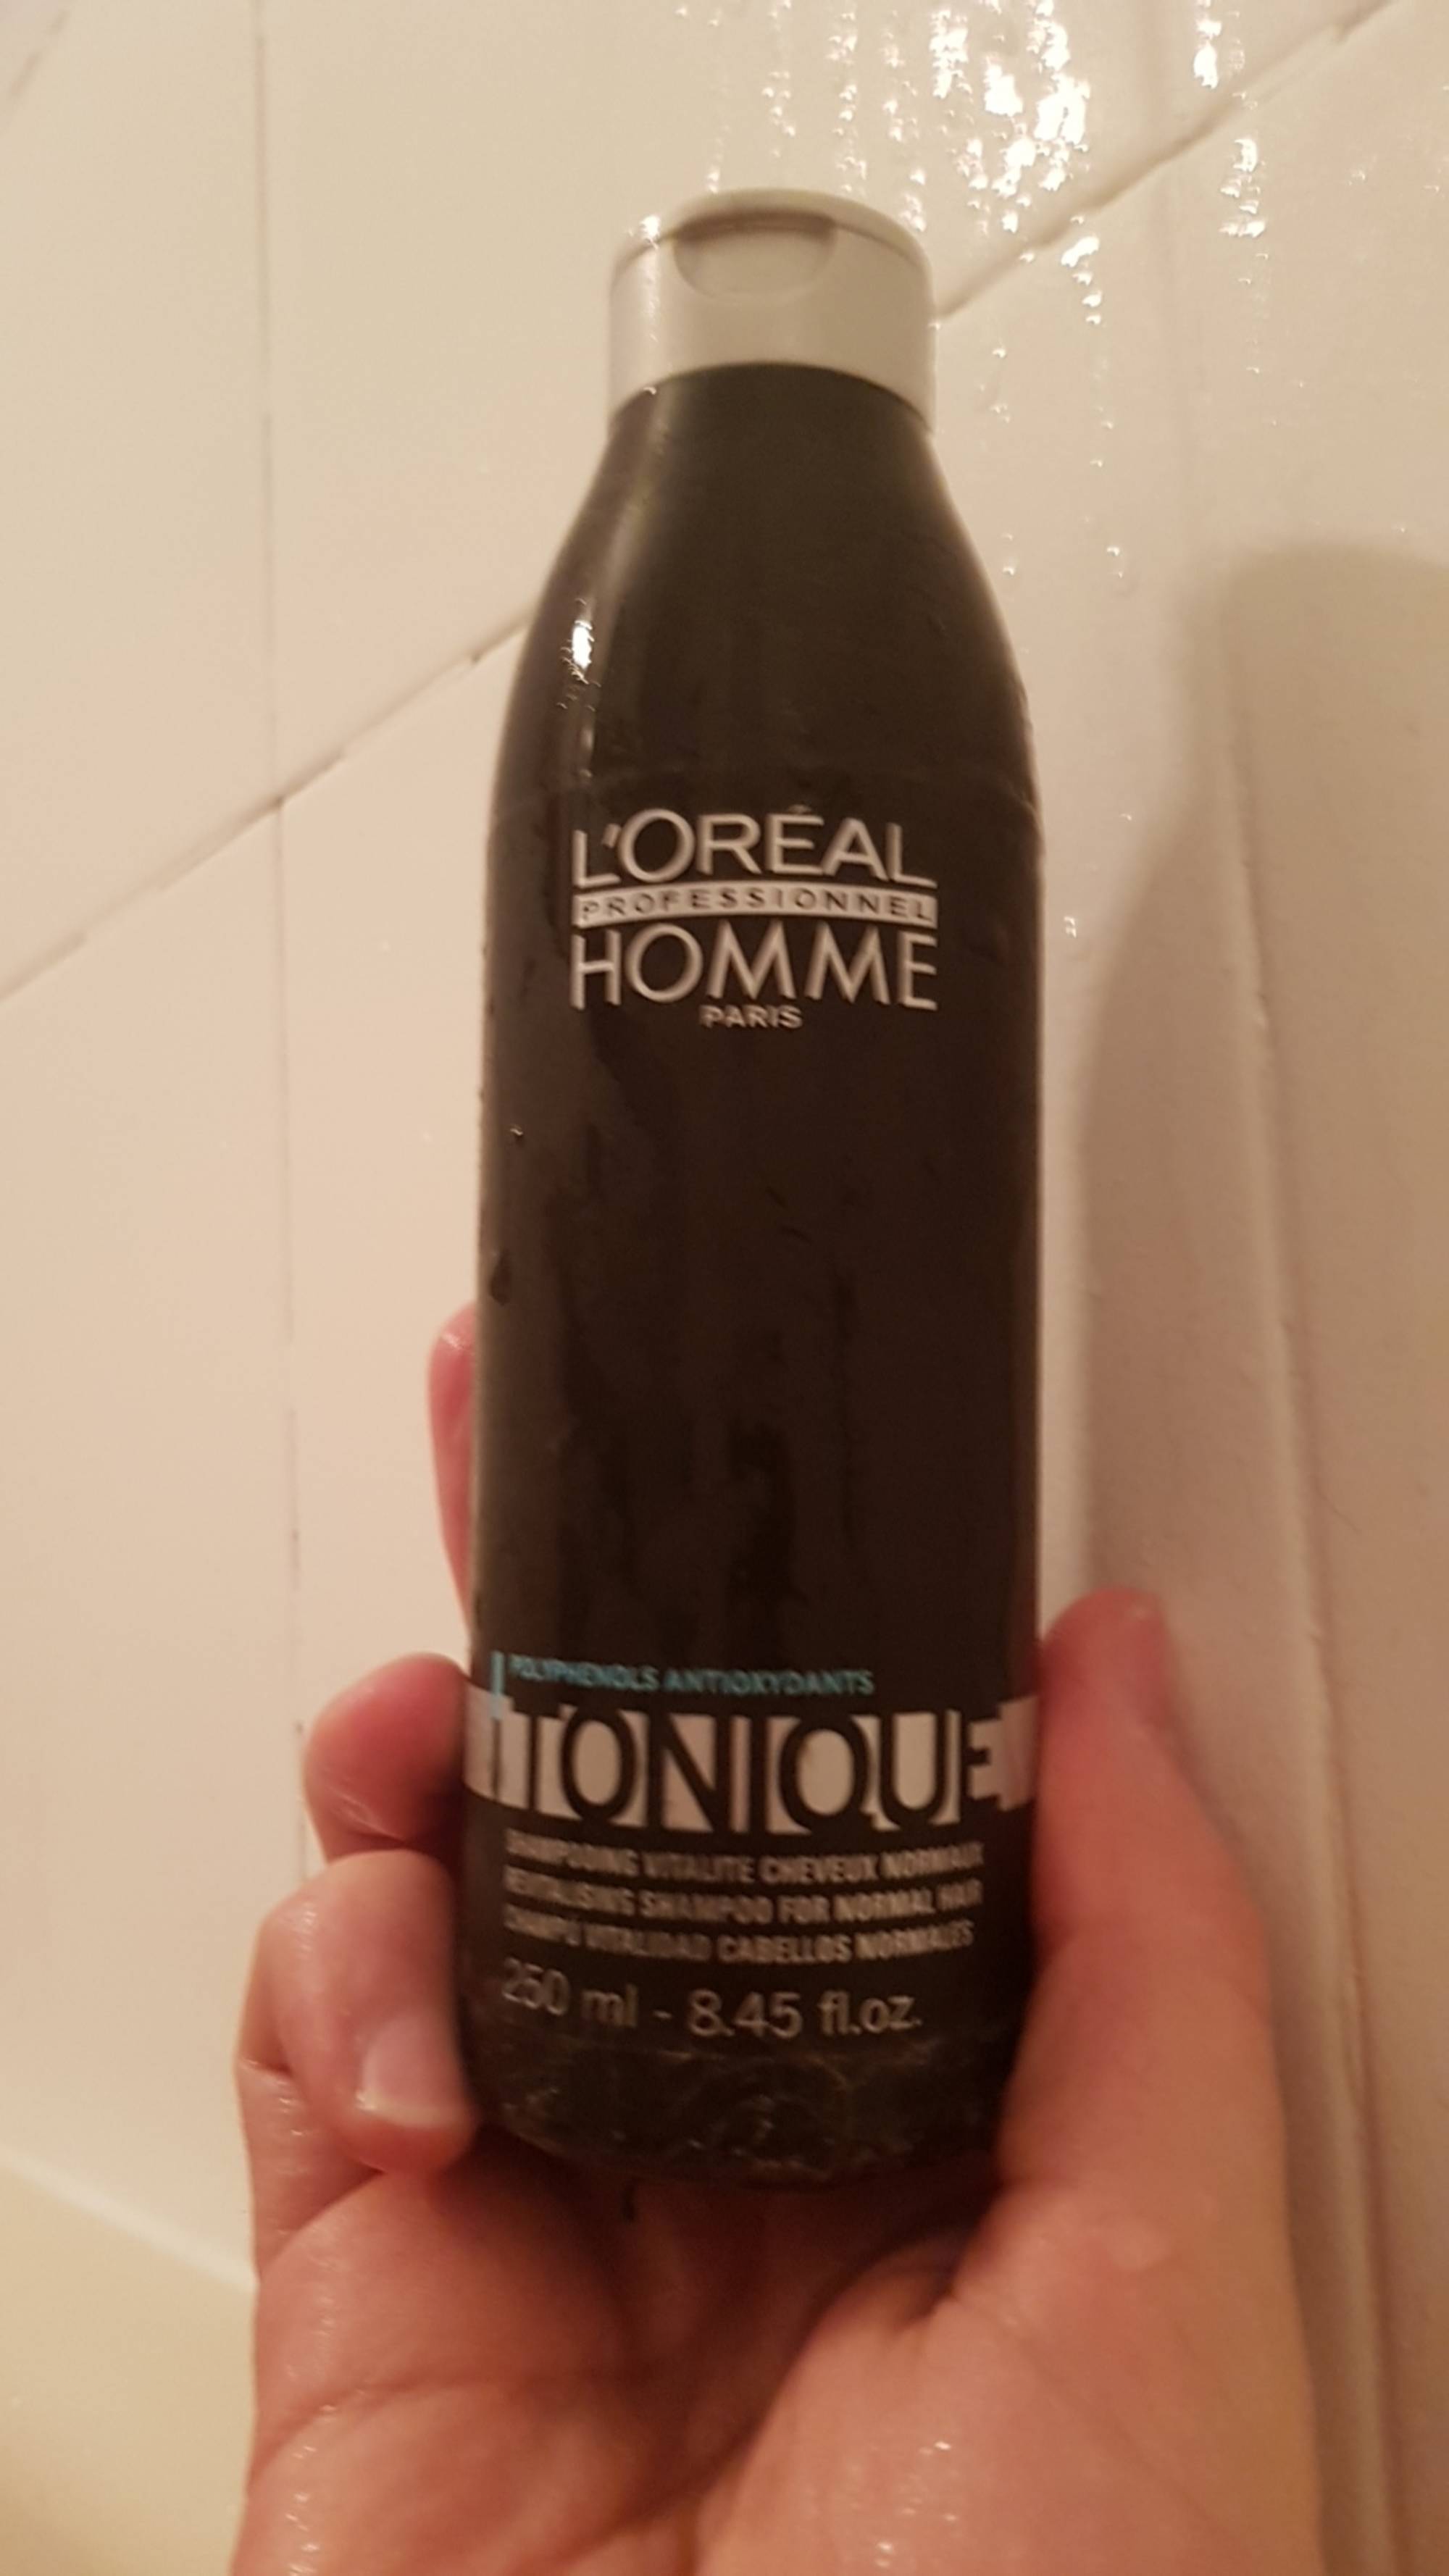 L'ORÉAL - Tonique homme - Shampooing vitalité cheveux normaux